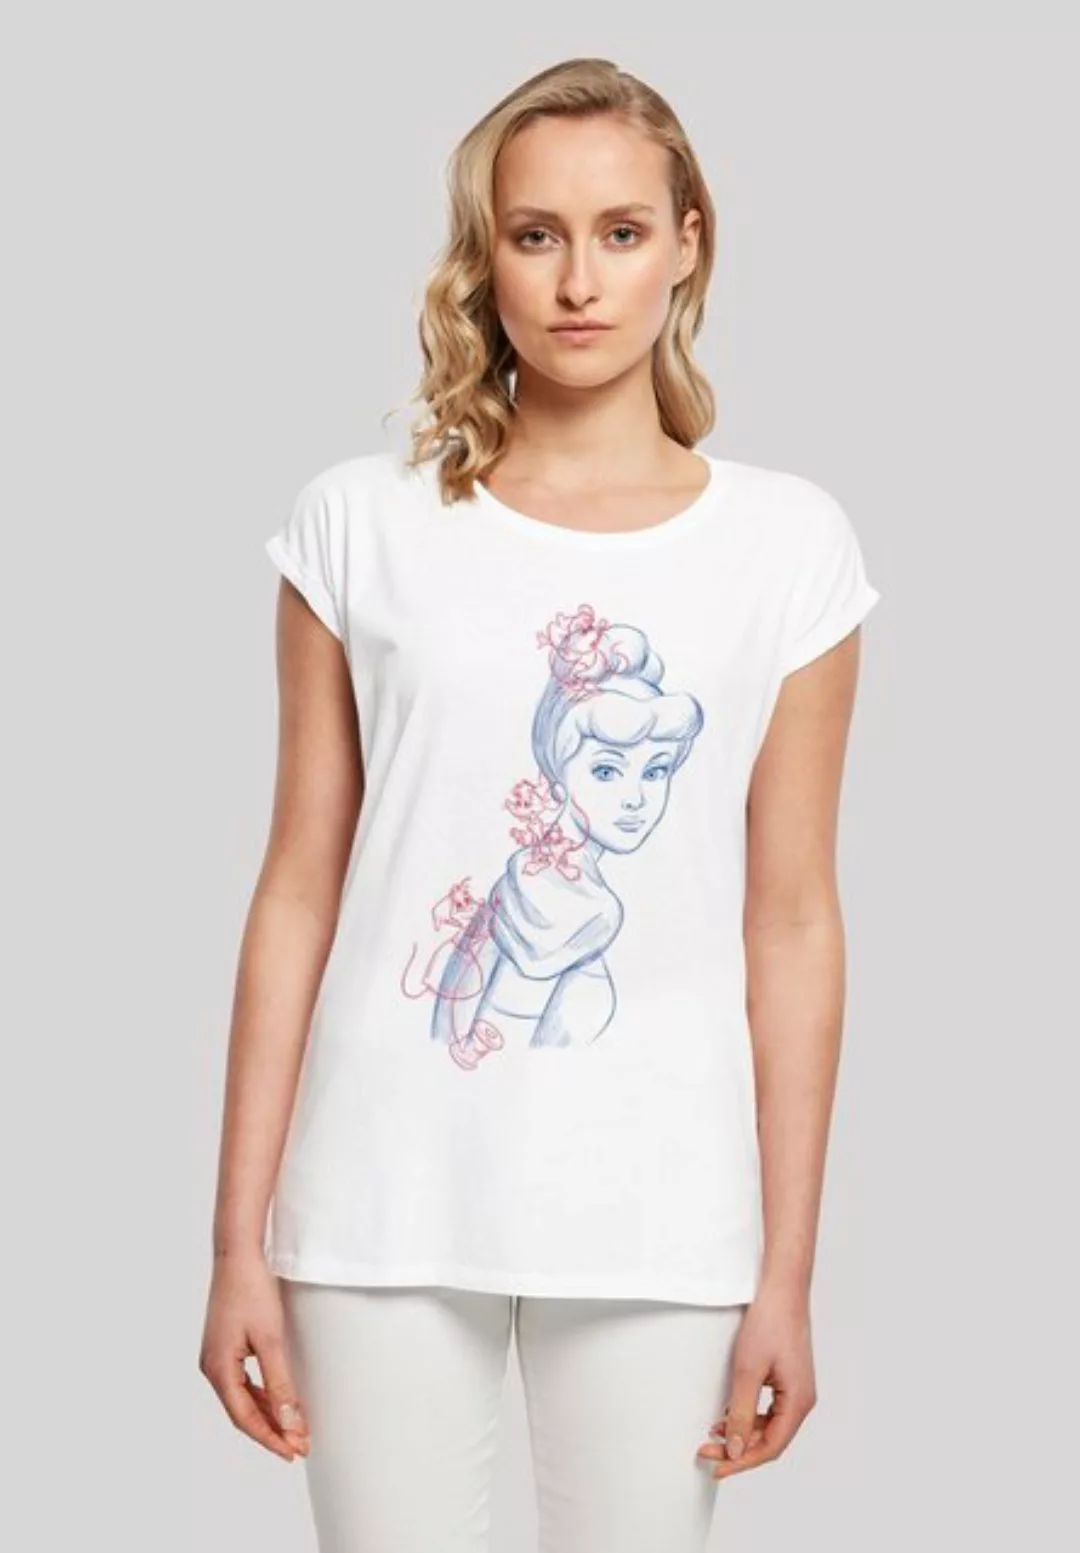 F4NT4STIC T-Shirt "Disney Die Schöne und das Biest Collage Zeichnung", Dame günstig online kaufen